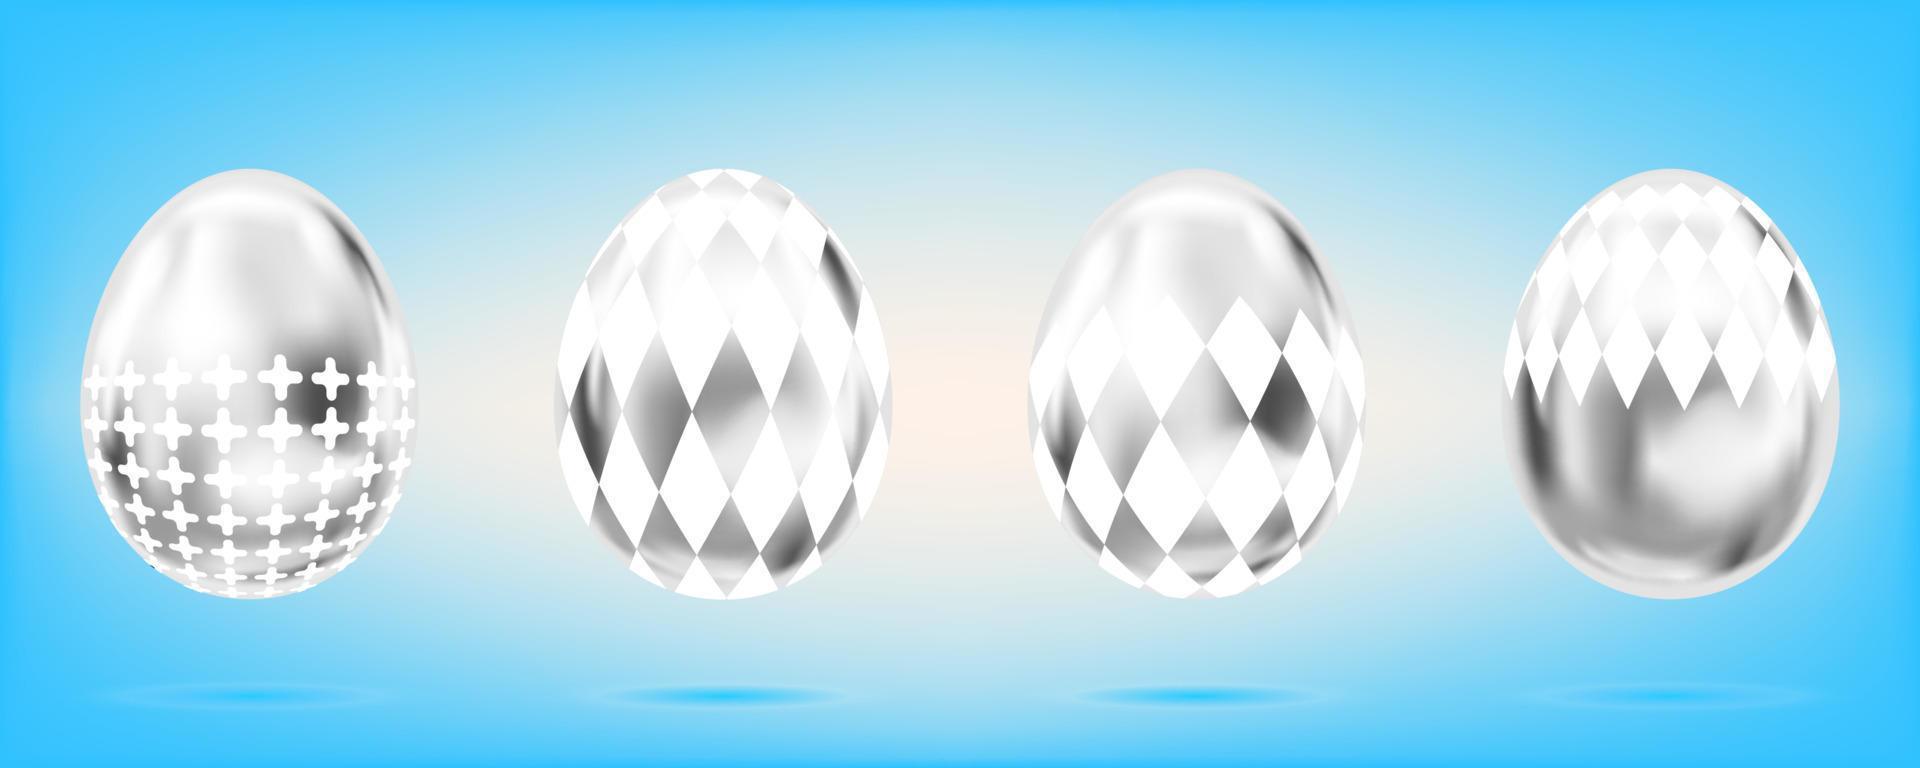 quattro uova d'argento sullo sfondo azzurro del cielo. oggetti isolati per la decorazione di pasqua. croce e domino rombo ornato vettore